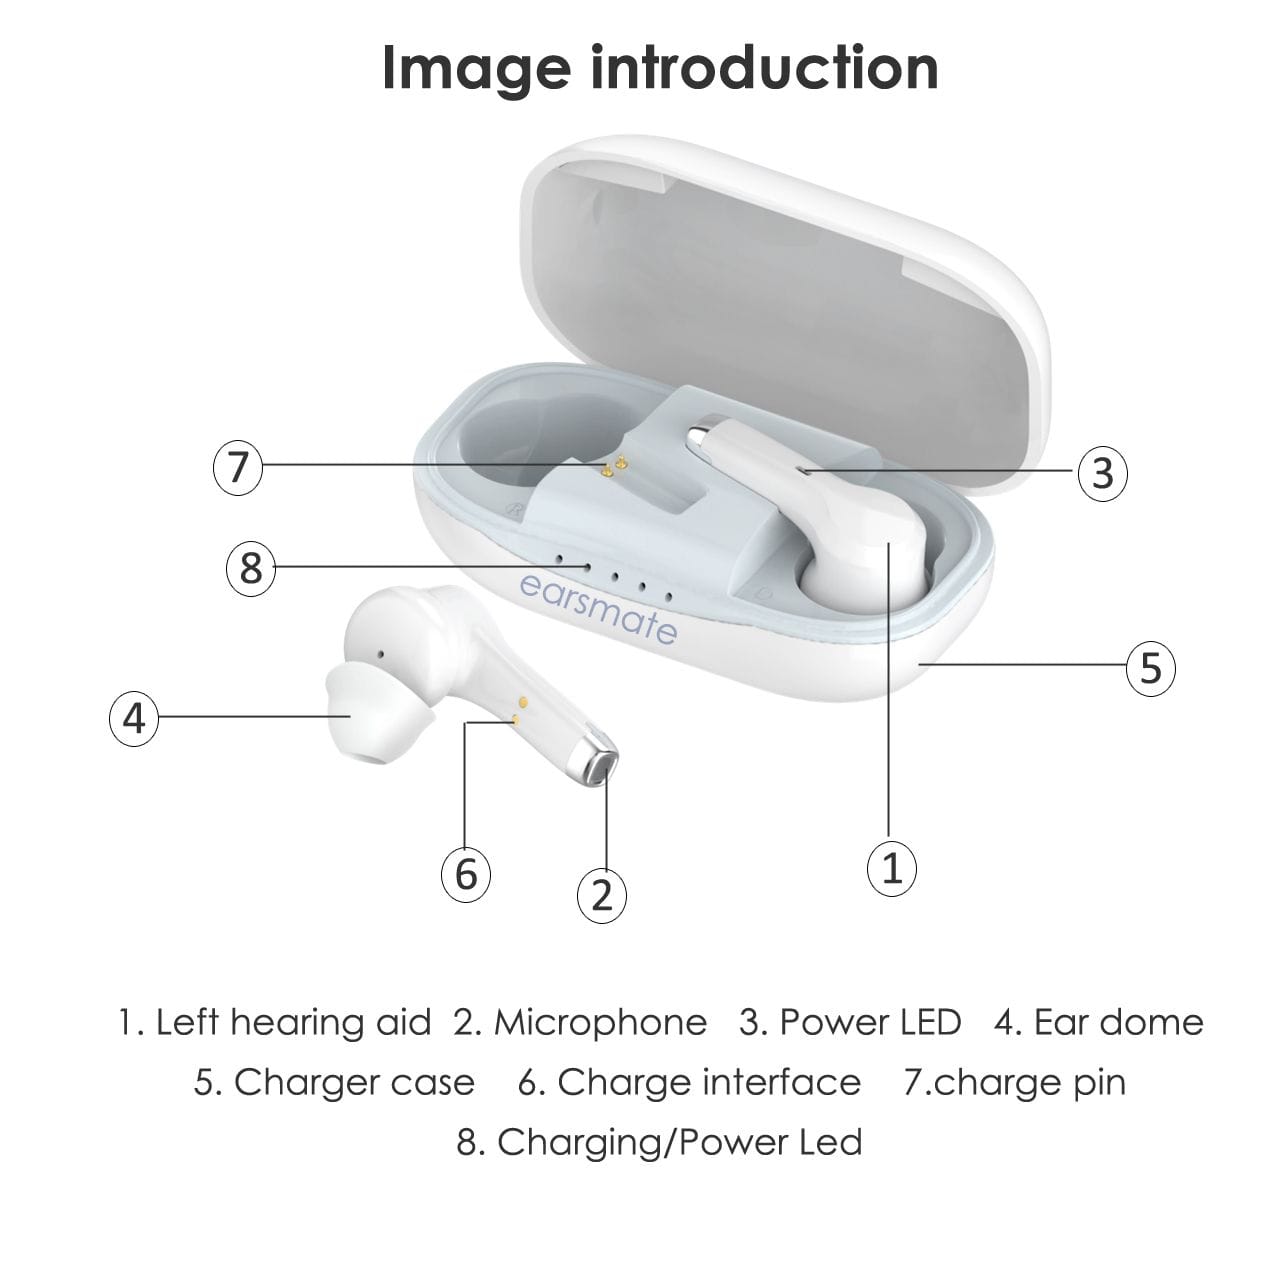 eEAR®-TWS-BT-001 Airpod 式助听器，非常隐蔽，看起来不像典型的助听器，而是看起来像各大手机品牌提供的时尚 Airpods 蓝牙